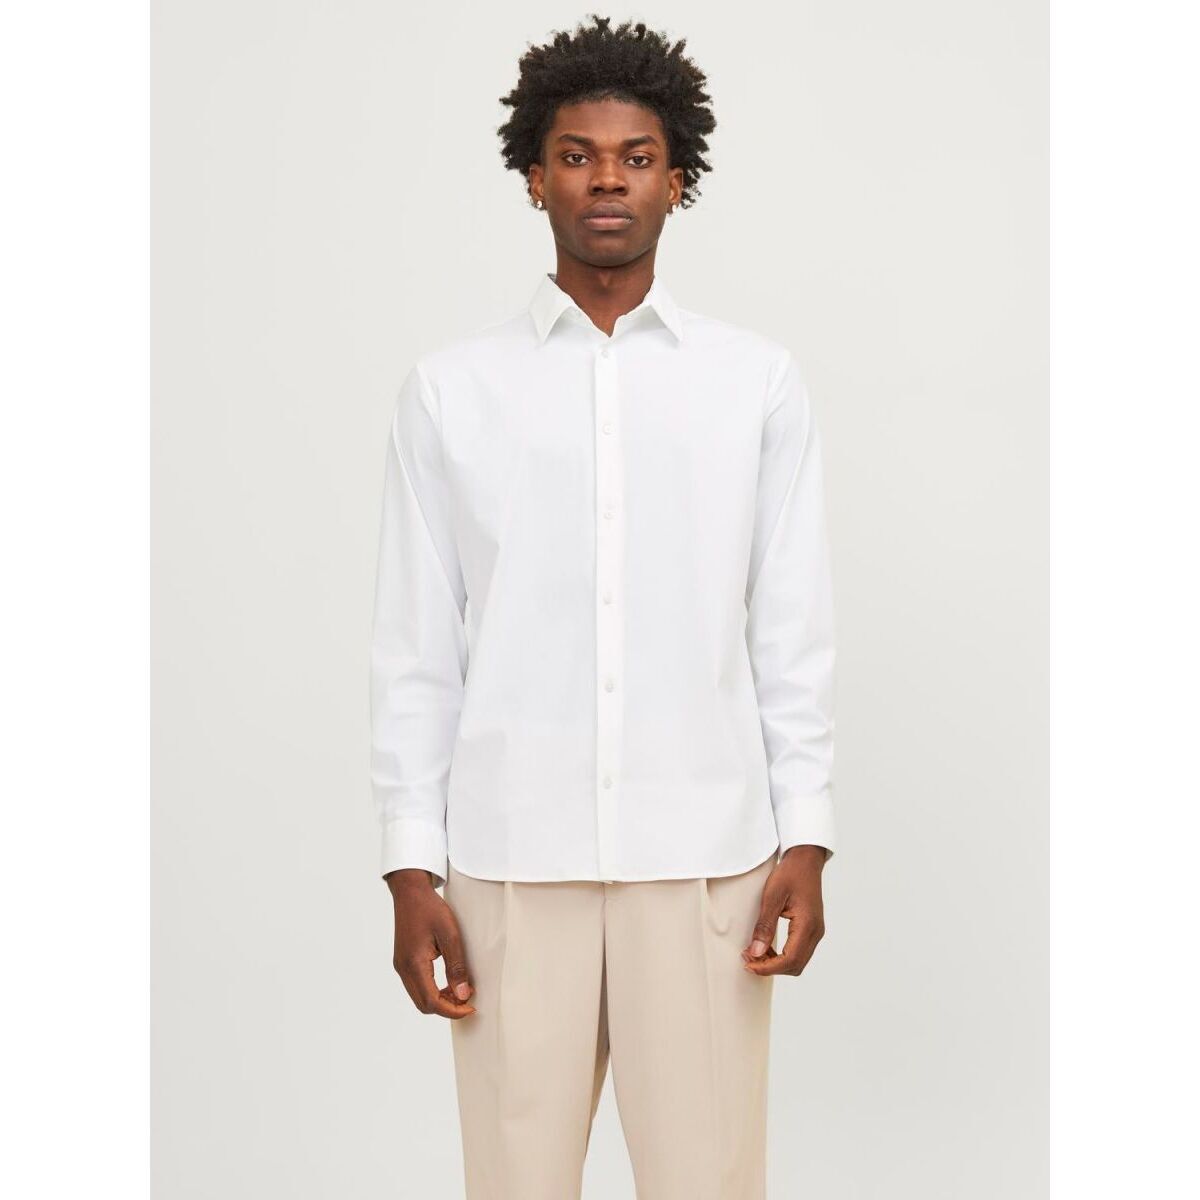 Vêtements Homme Chemises manches longues Jack & Jones 12241530 BLAACTIVE-WHITE Blanc